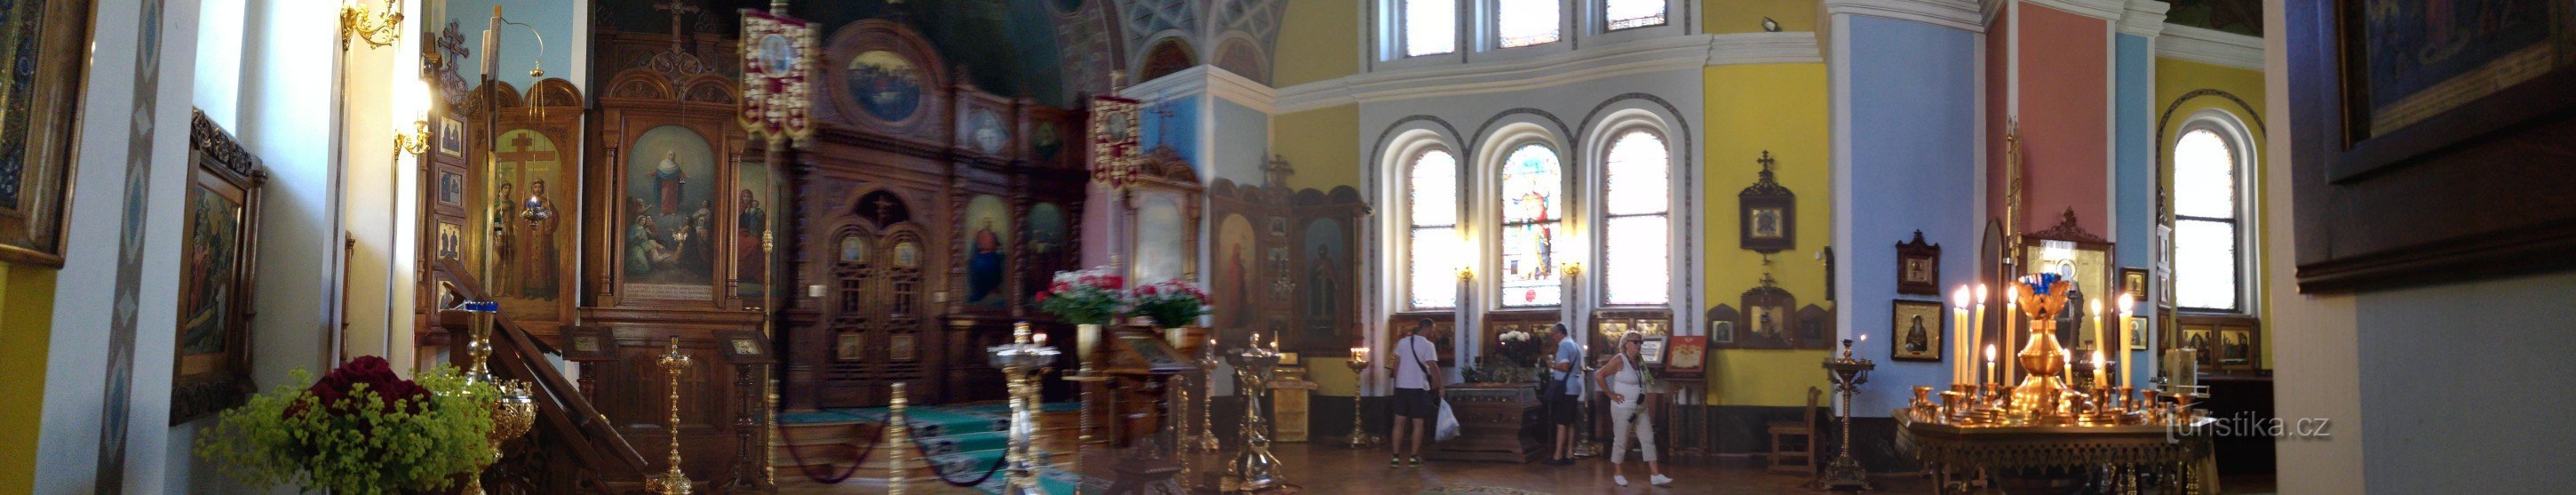 Świątynia św. apostołowie Piotr i Paweł - Karlowe Wary